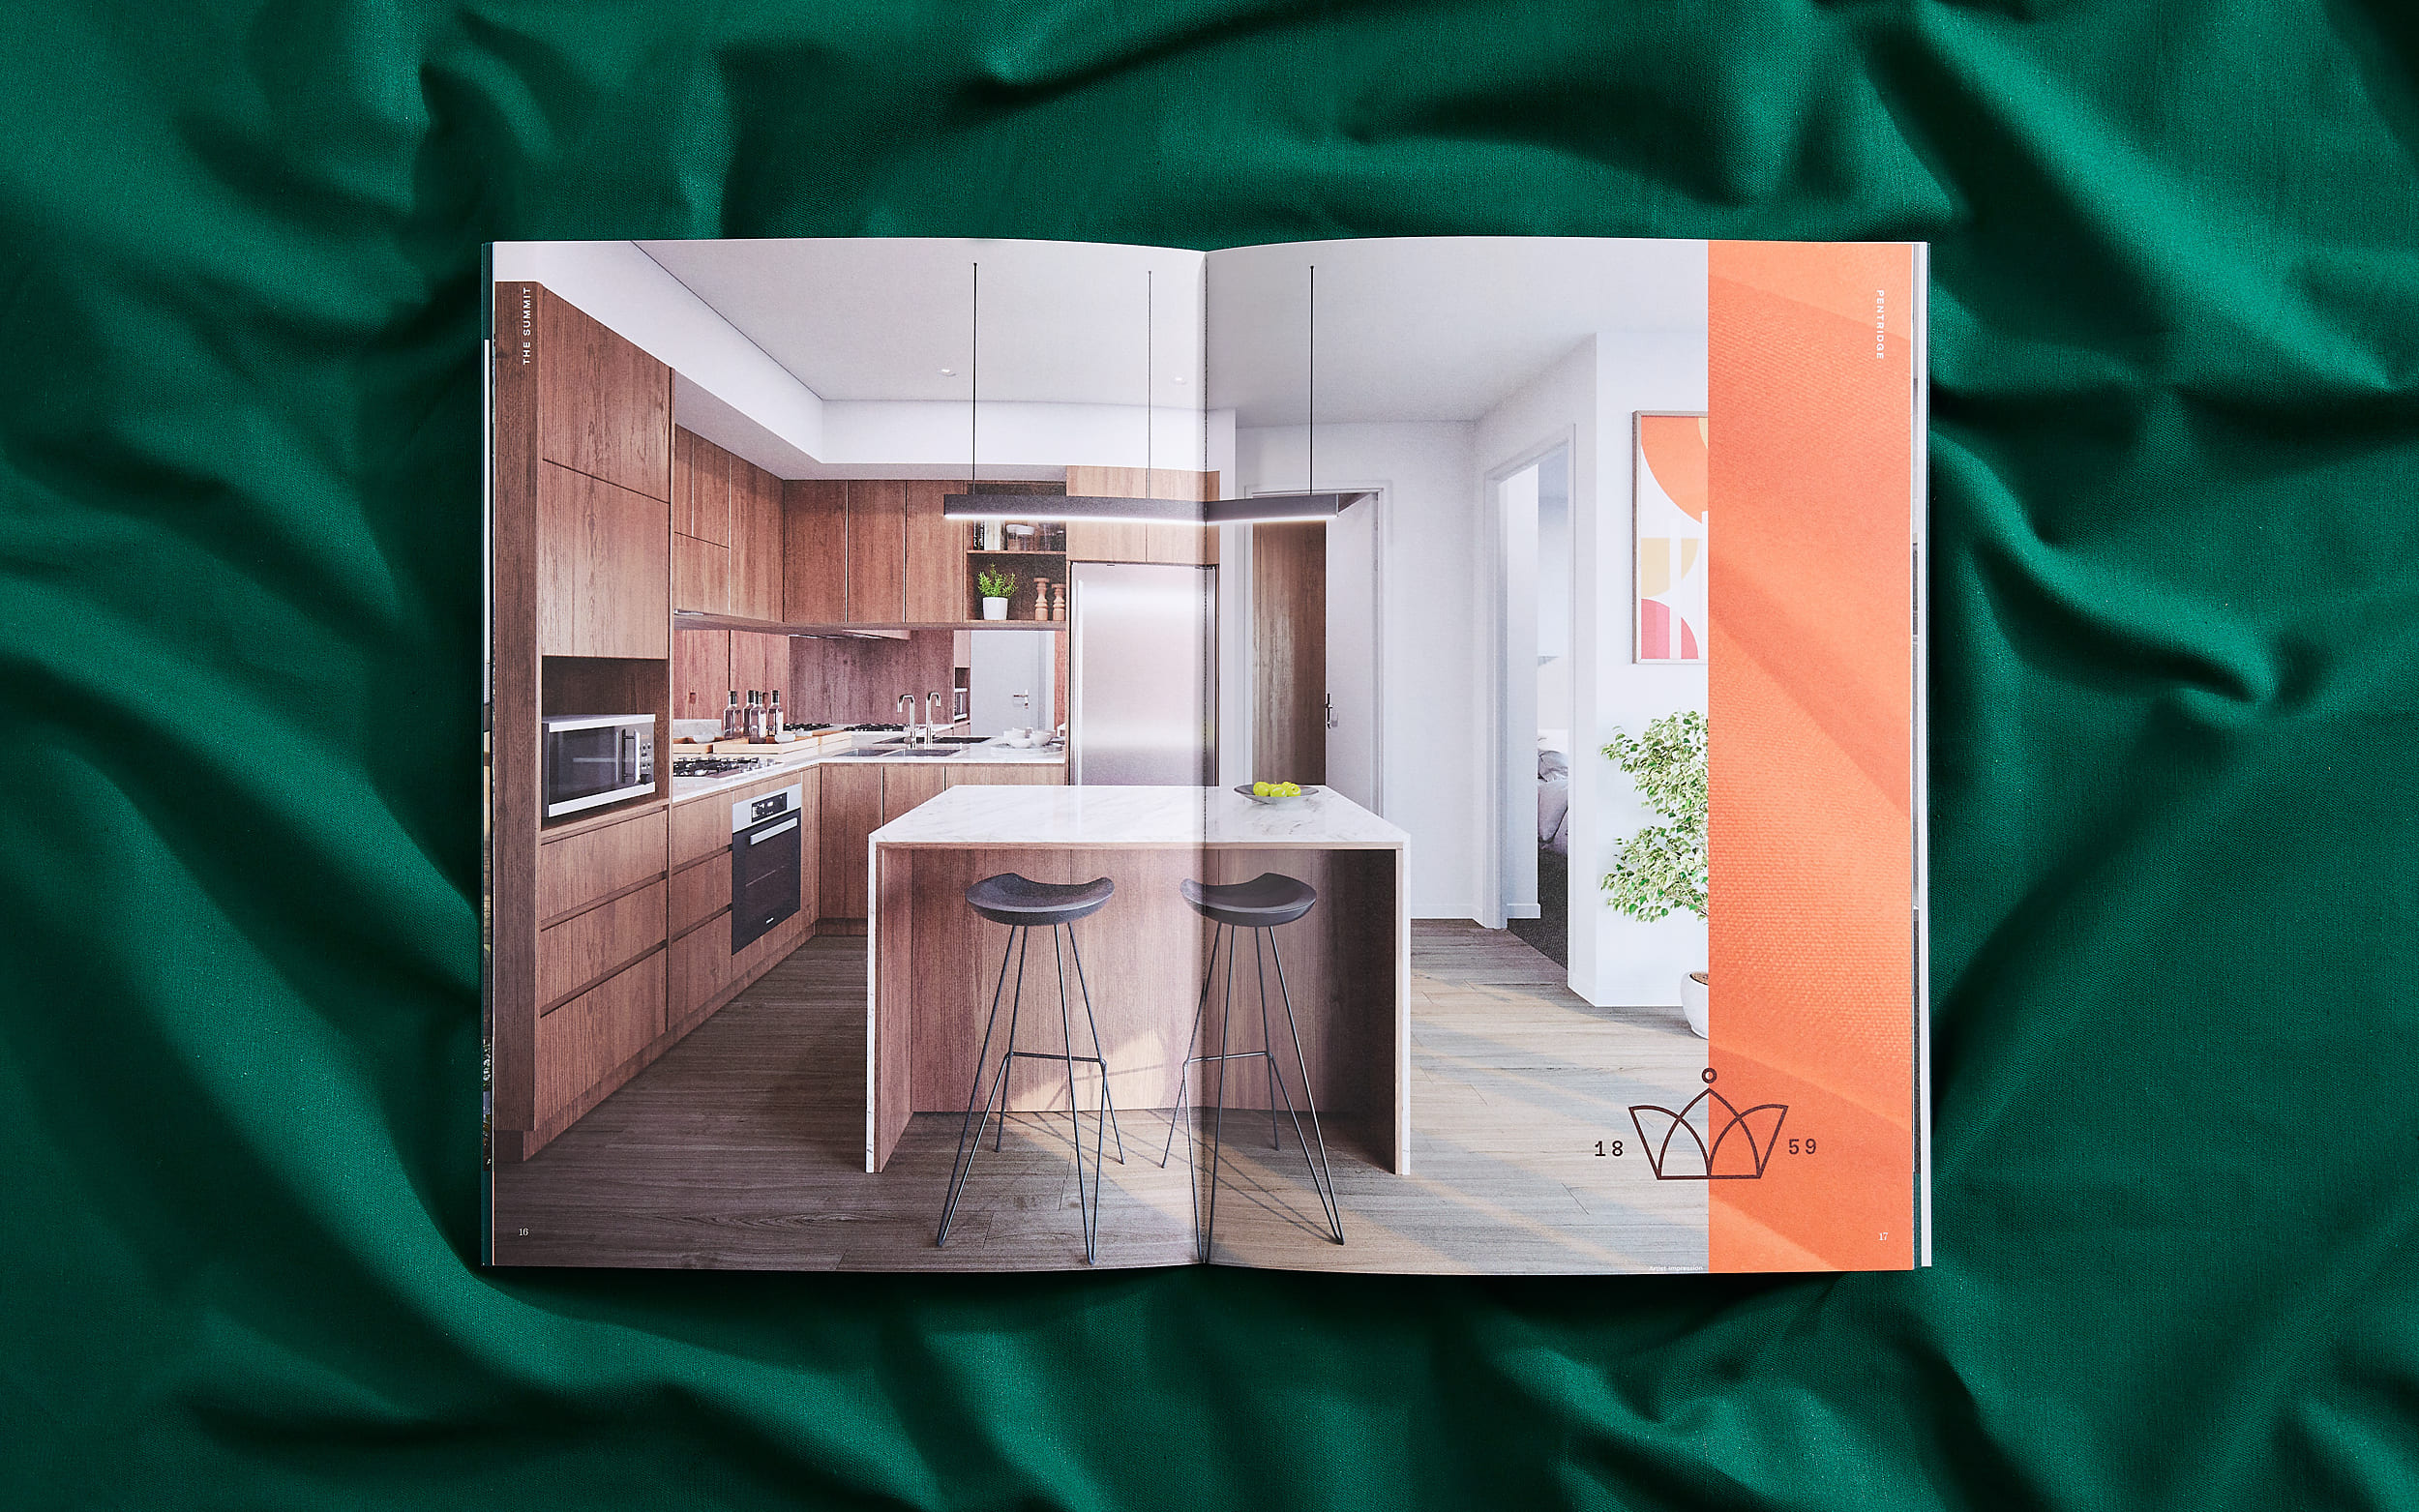 Open brochure spread showing living room render